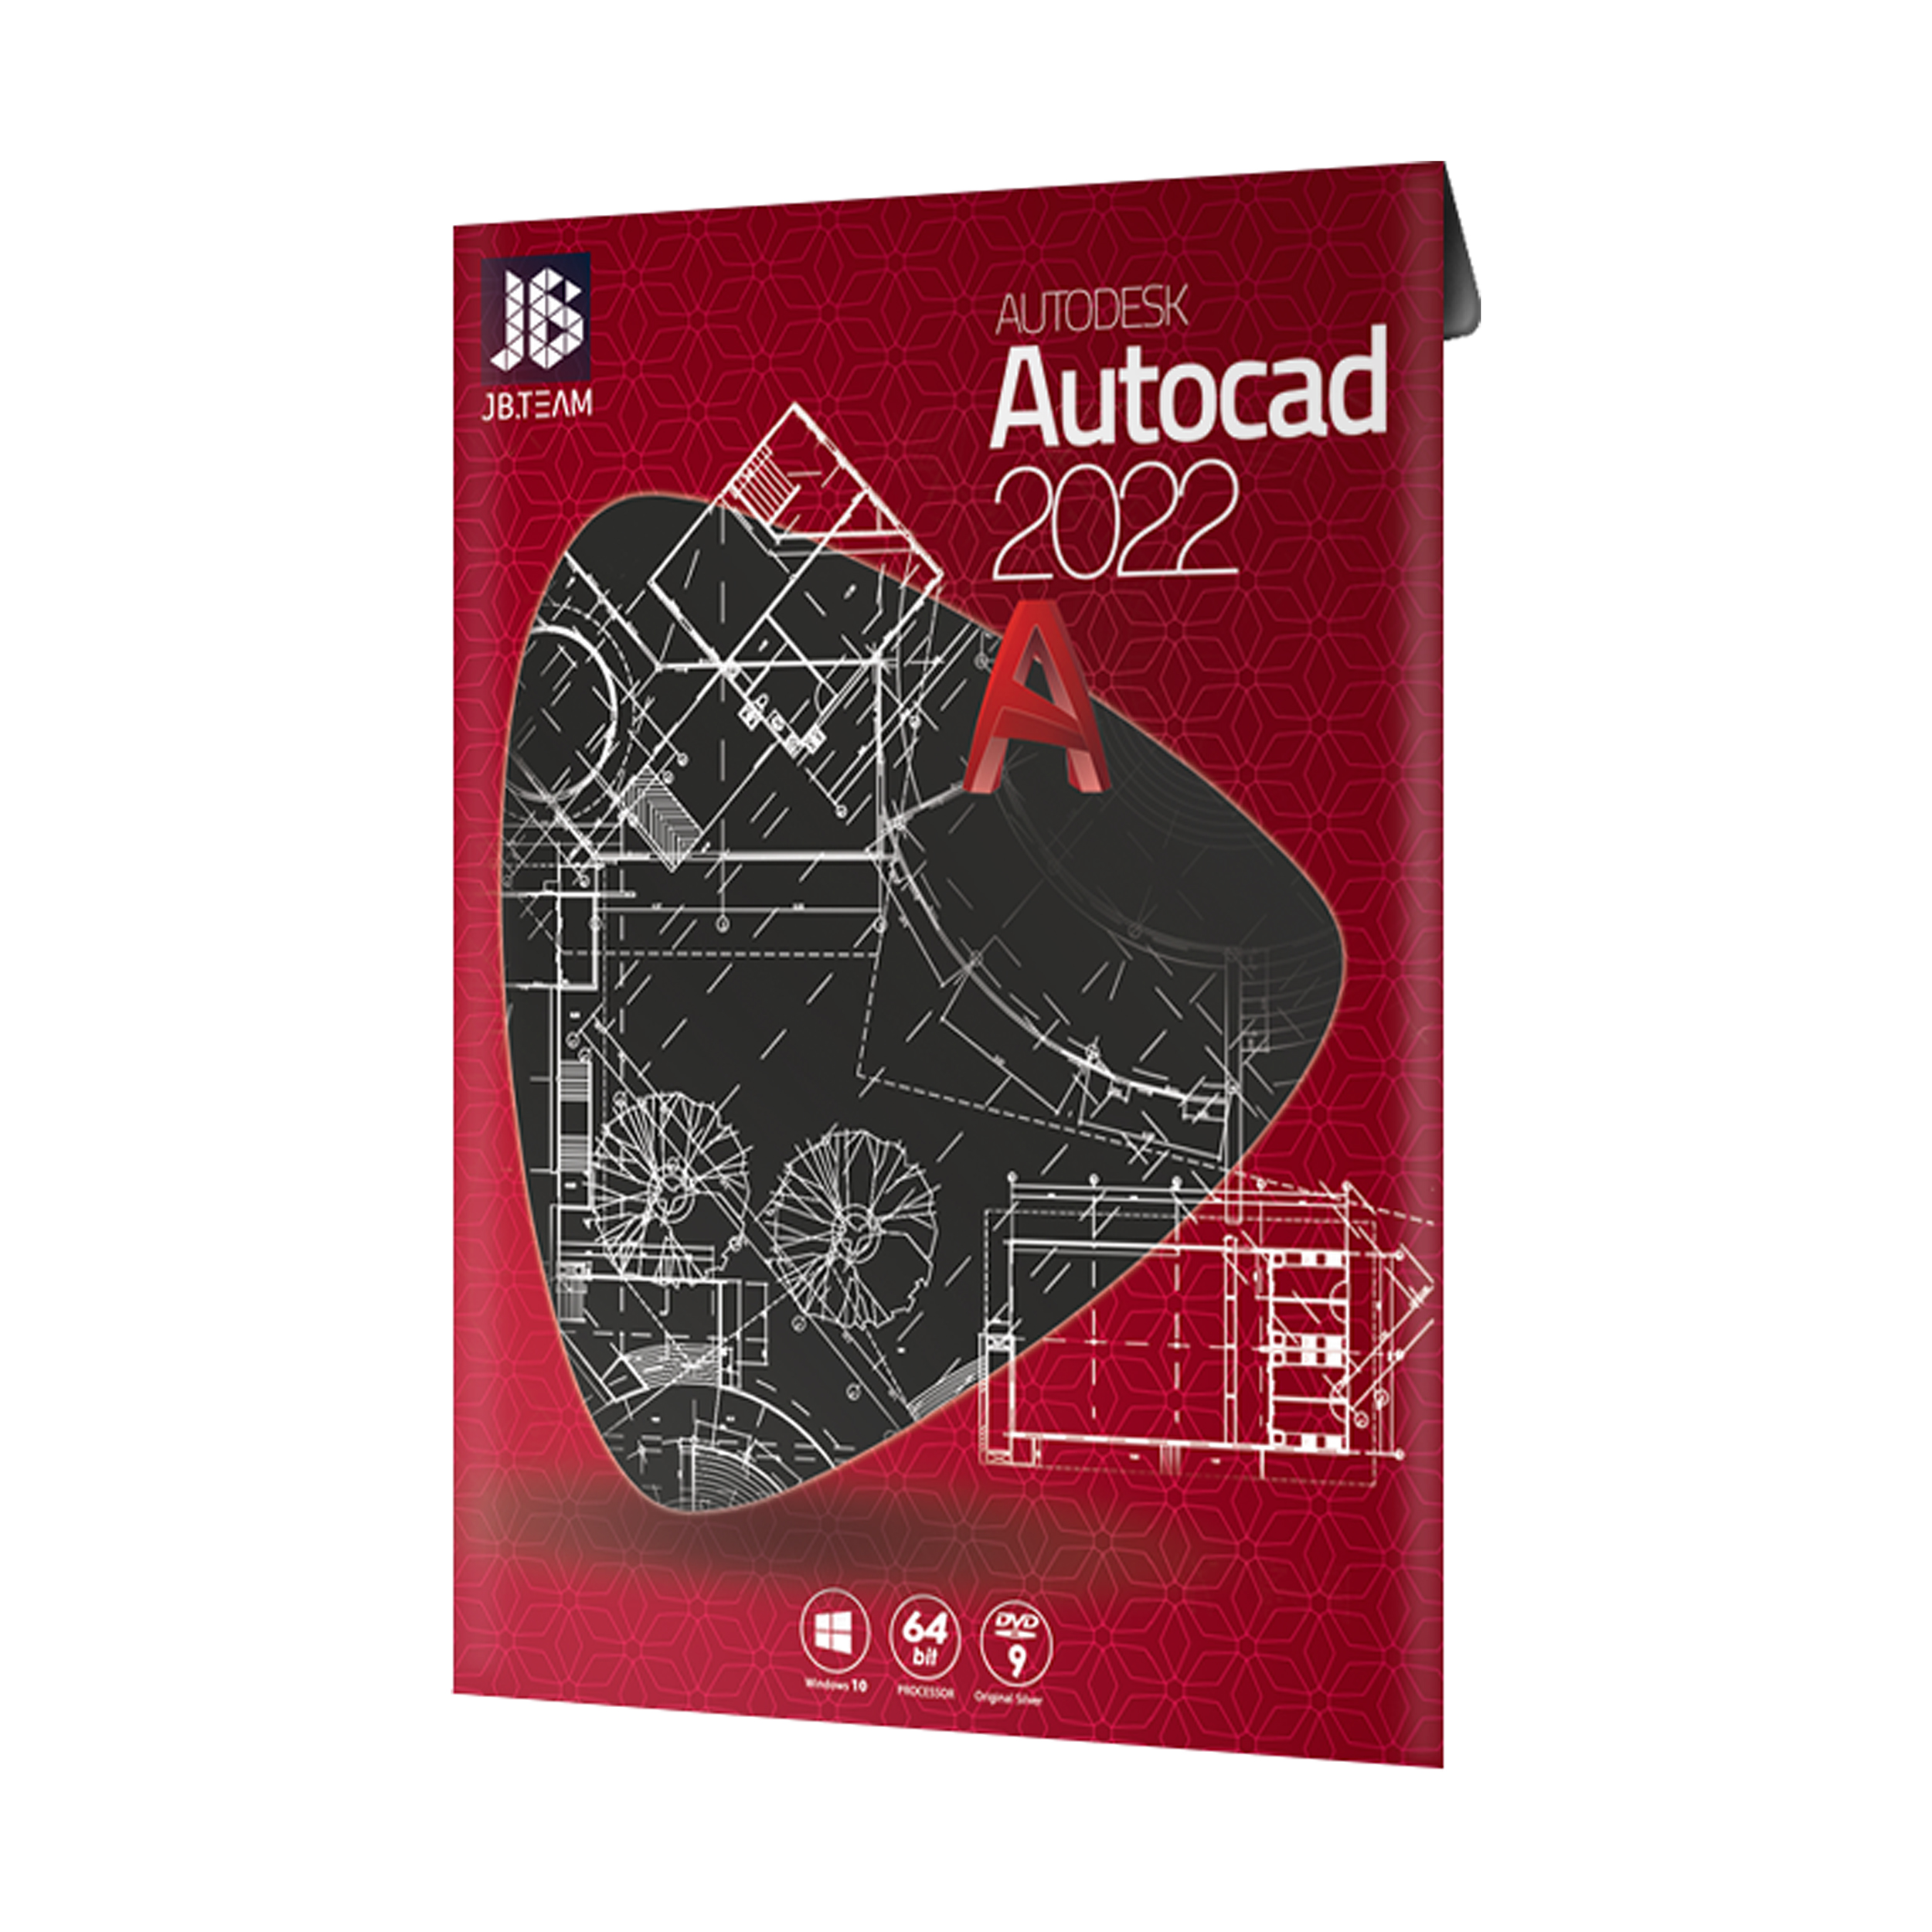 نرم افزار Autodesk Autocad 2022 نشر جی بی تیم